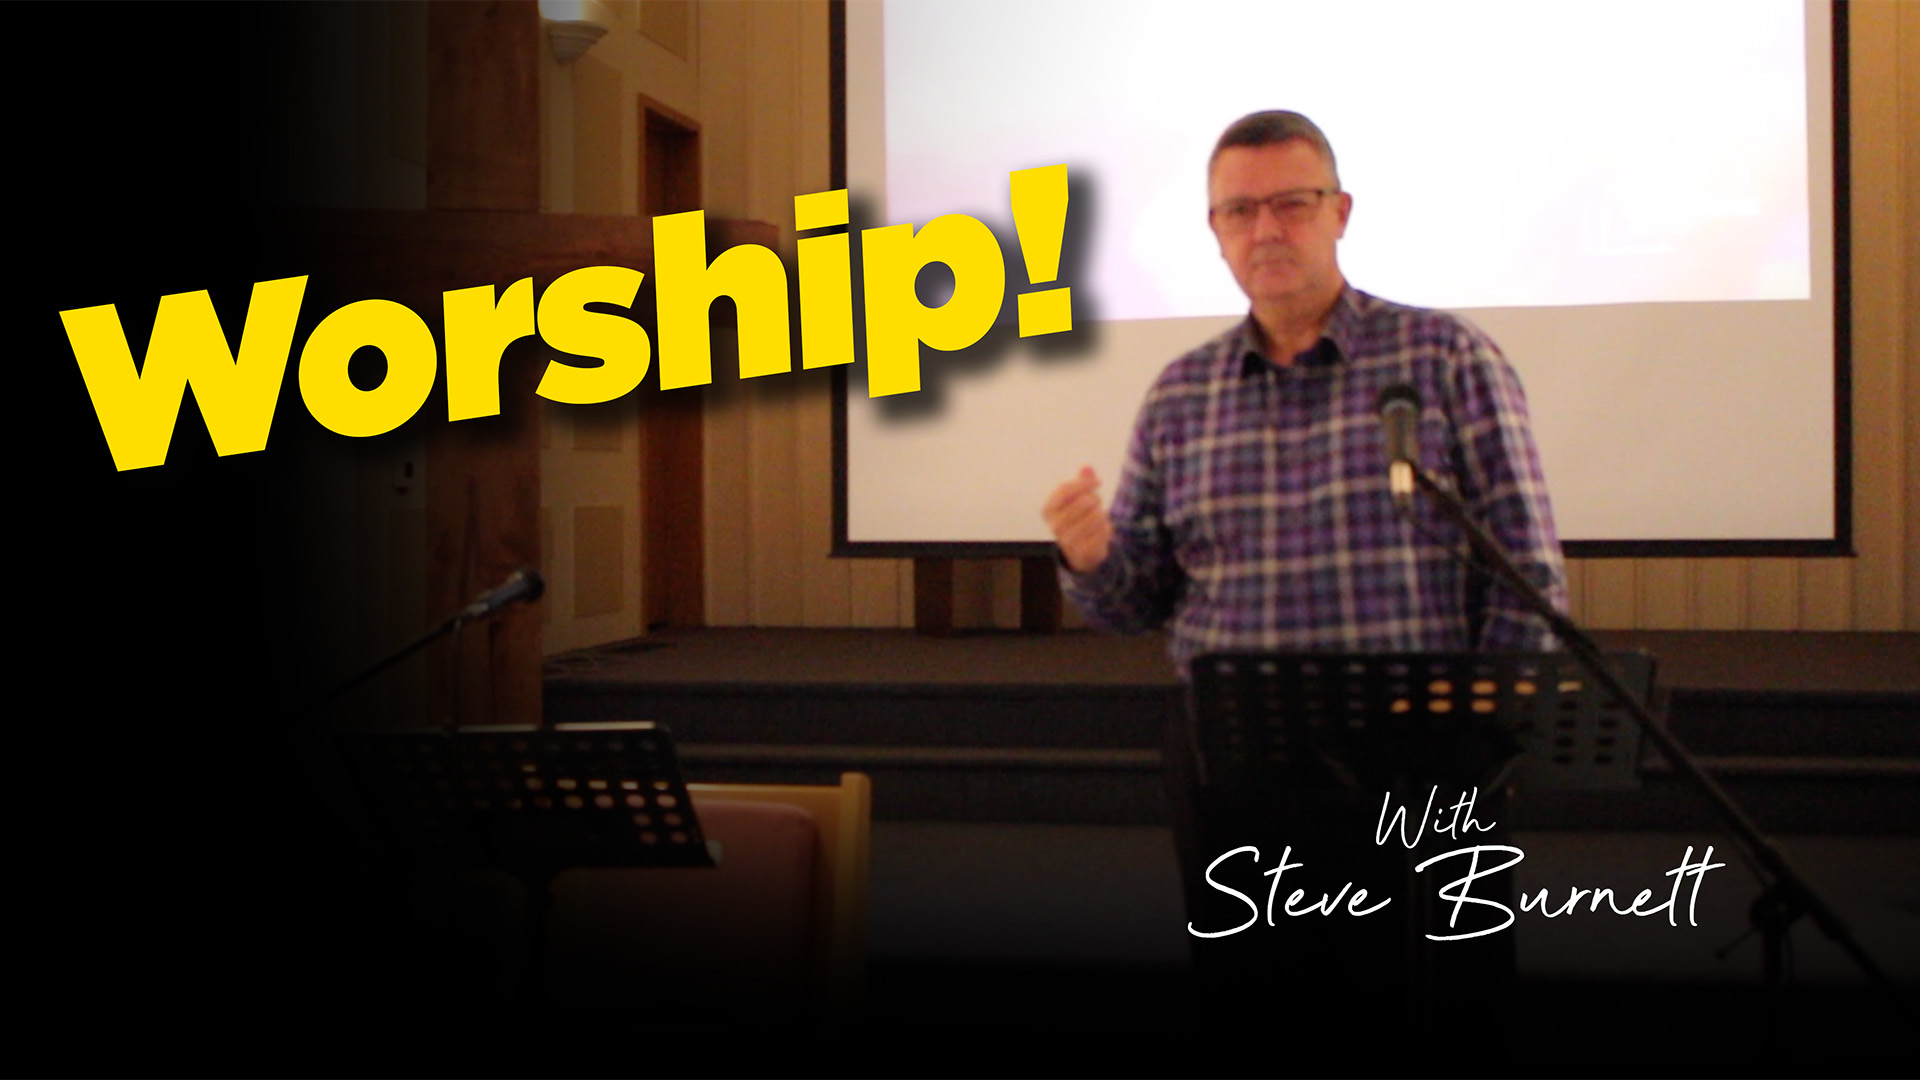 Worship with speaker Steve Burnett